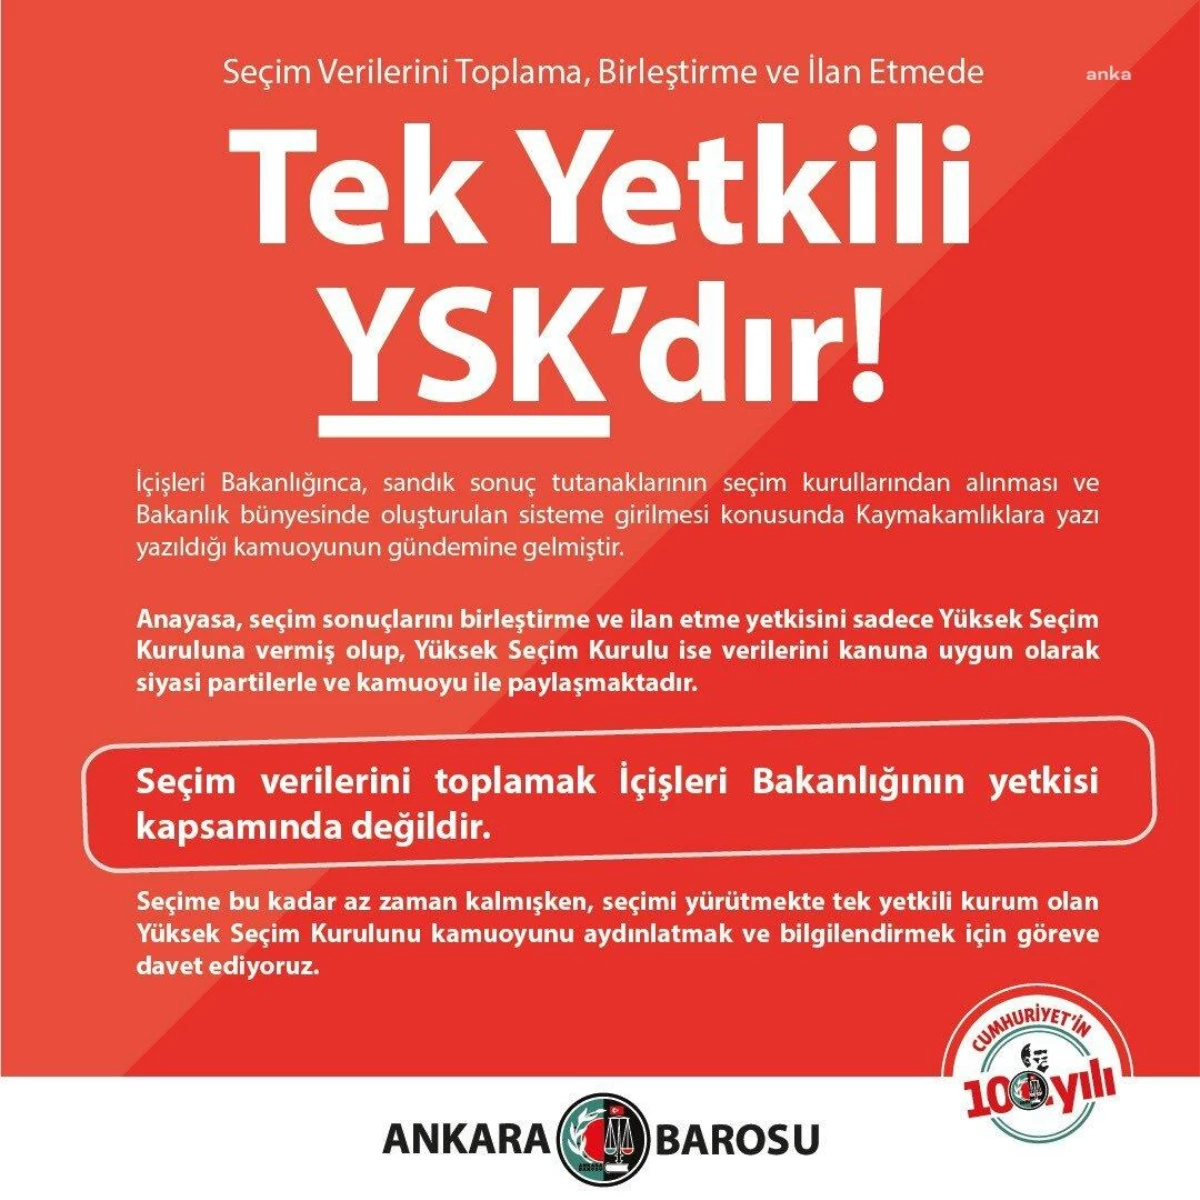 Ankara Barosu: Seçim bilgilerini toplama yetkisi İçişleri Bakanlığı'nda değil